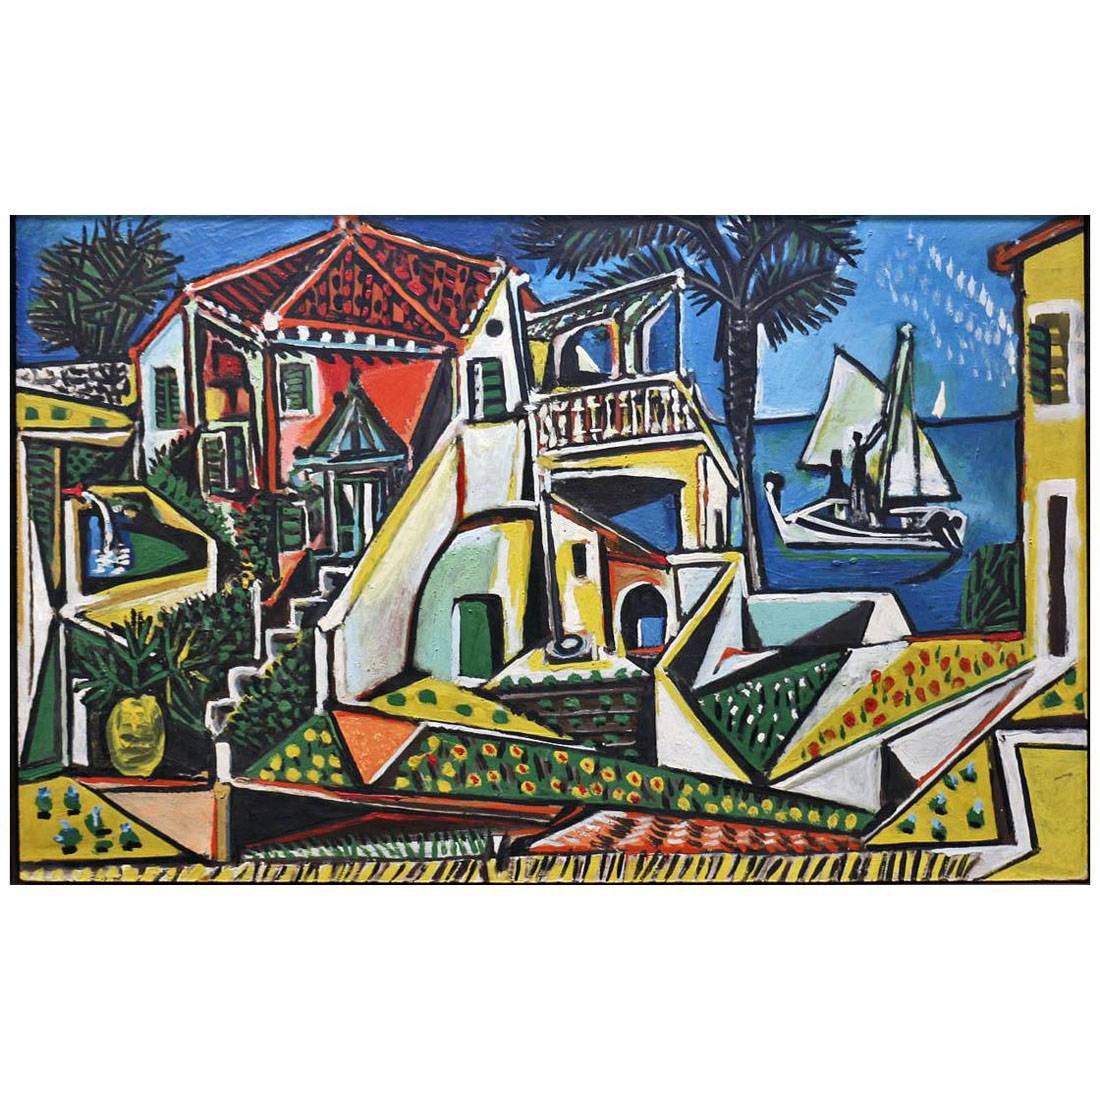 Pablo Picasso. Paysage mediterraneen. 1952, Albertina, Wien